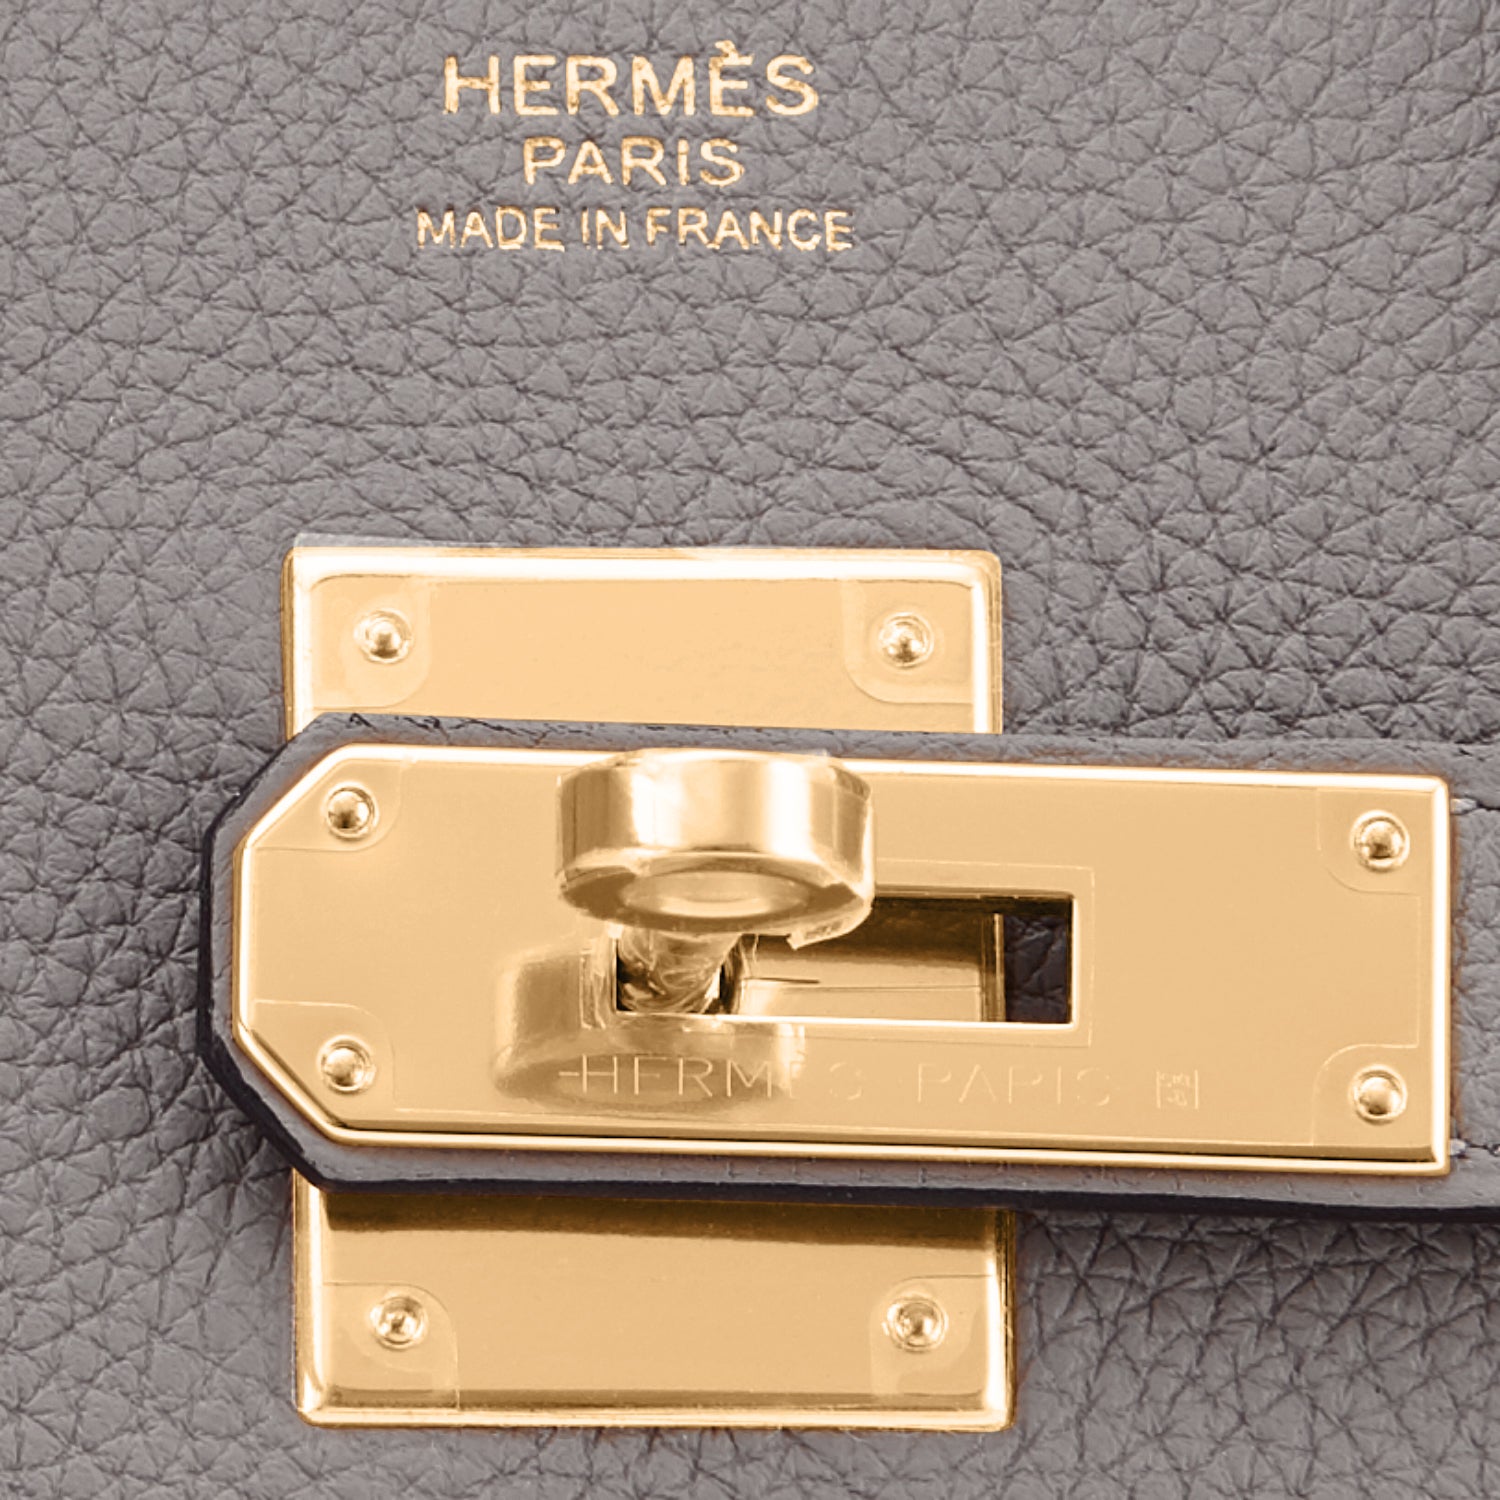 HERMES Birkin 30 Togo Gris Etain Bag Rose Gold Hardware D Stamp